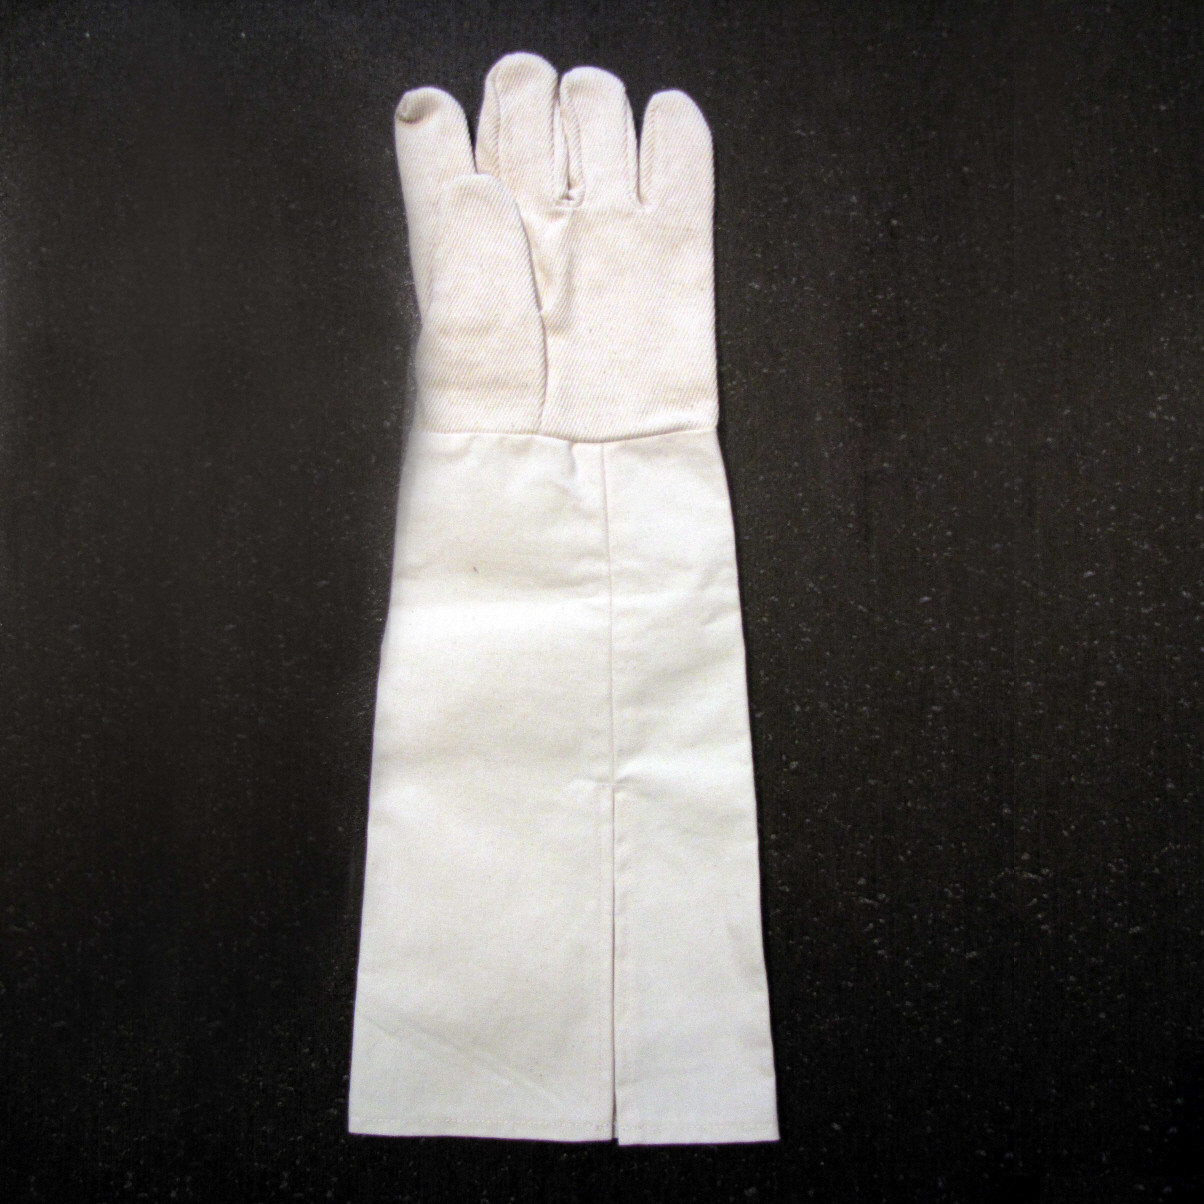 Einzelhandschuh ohne Loch (für Armillusion) rechts